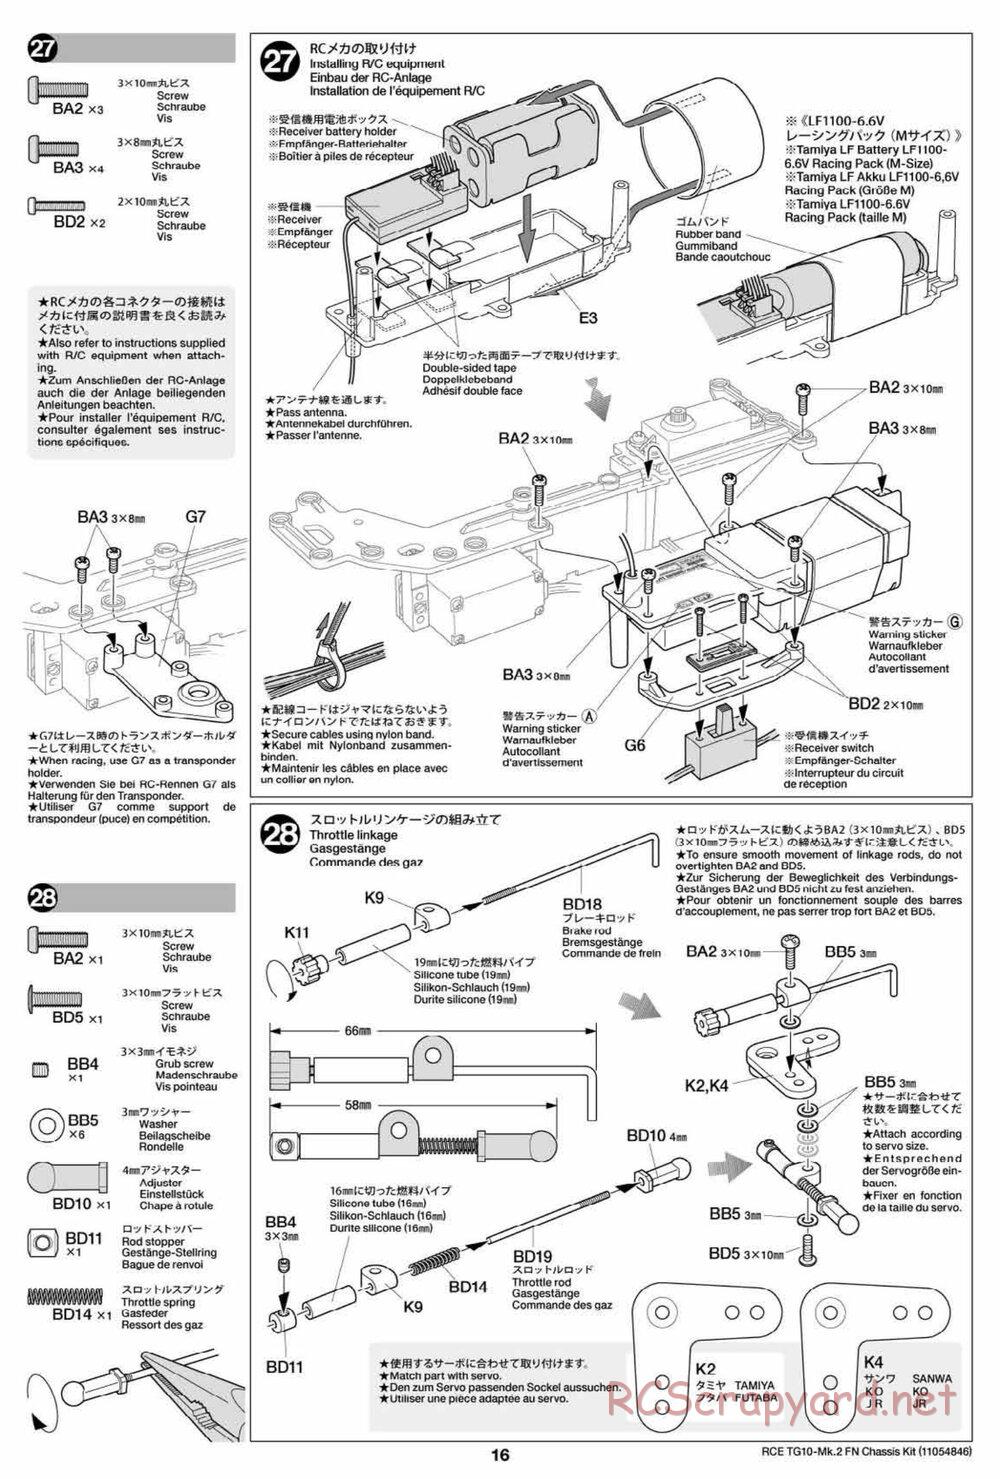 Tamiya - TG10 Mk.2 FN Chassis - Manual - Page 16